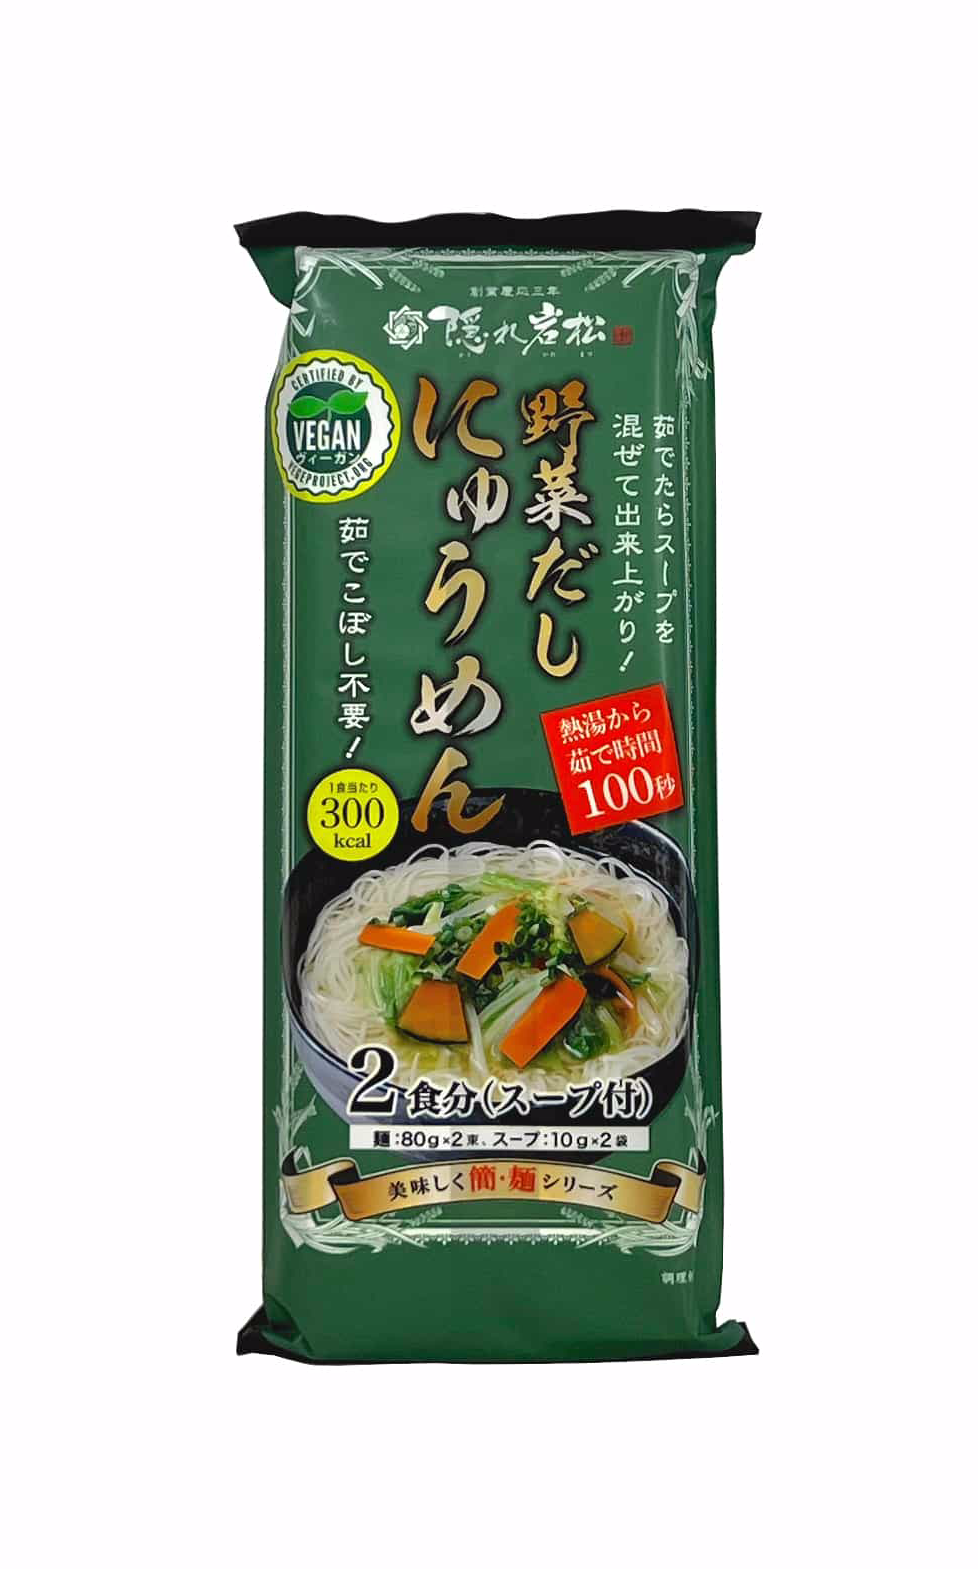 Best Before: 2022.11.16 Vegan Ramen Noodles 180g Kakureiwamatsu Shiodashi Nyumen Japan